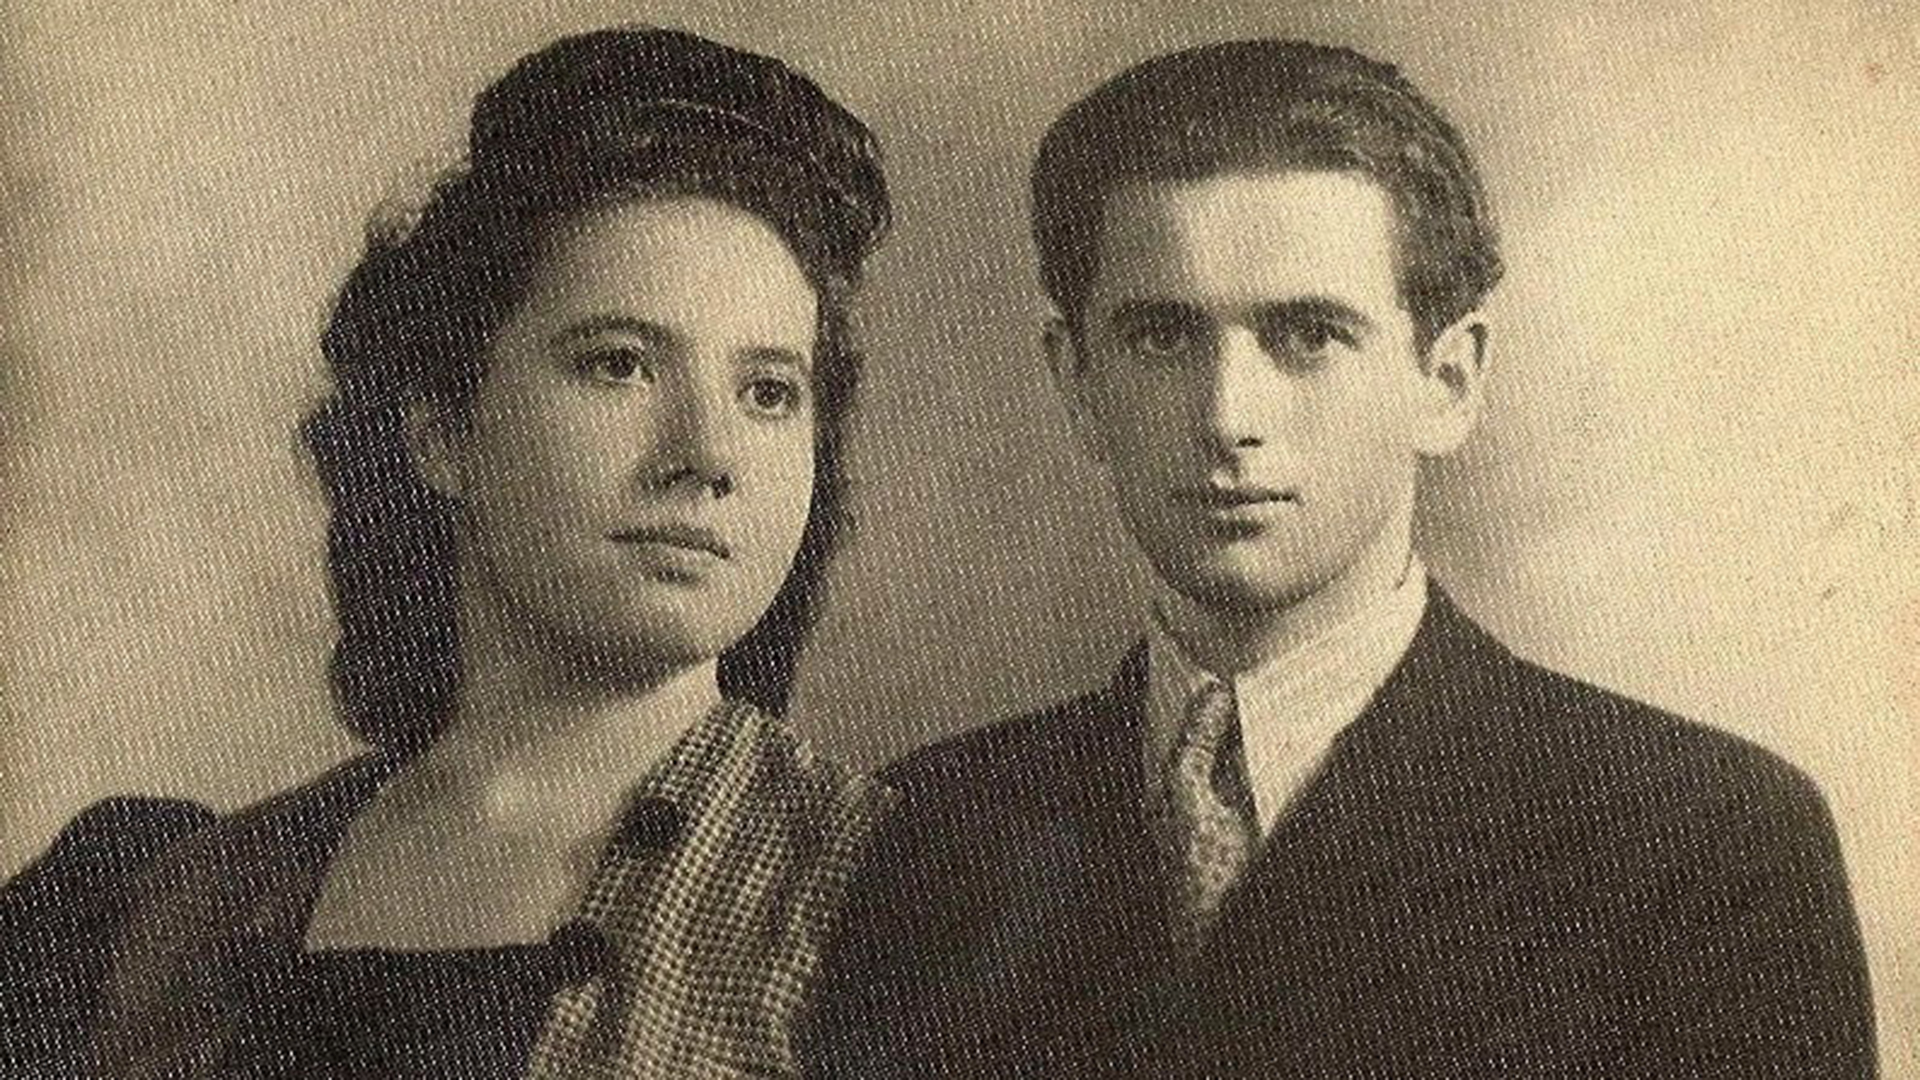 Francisco Wichter cuando todavía se llamaba Faivel junto a su esposa Hinda Zelegraut en una foto sacada en Roma antes de emigrar hacia Buenos Aires en julio de 1947